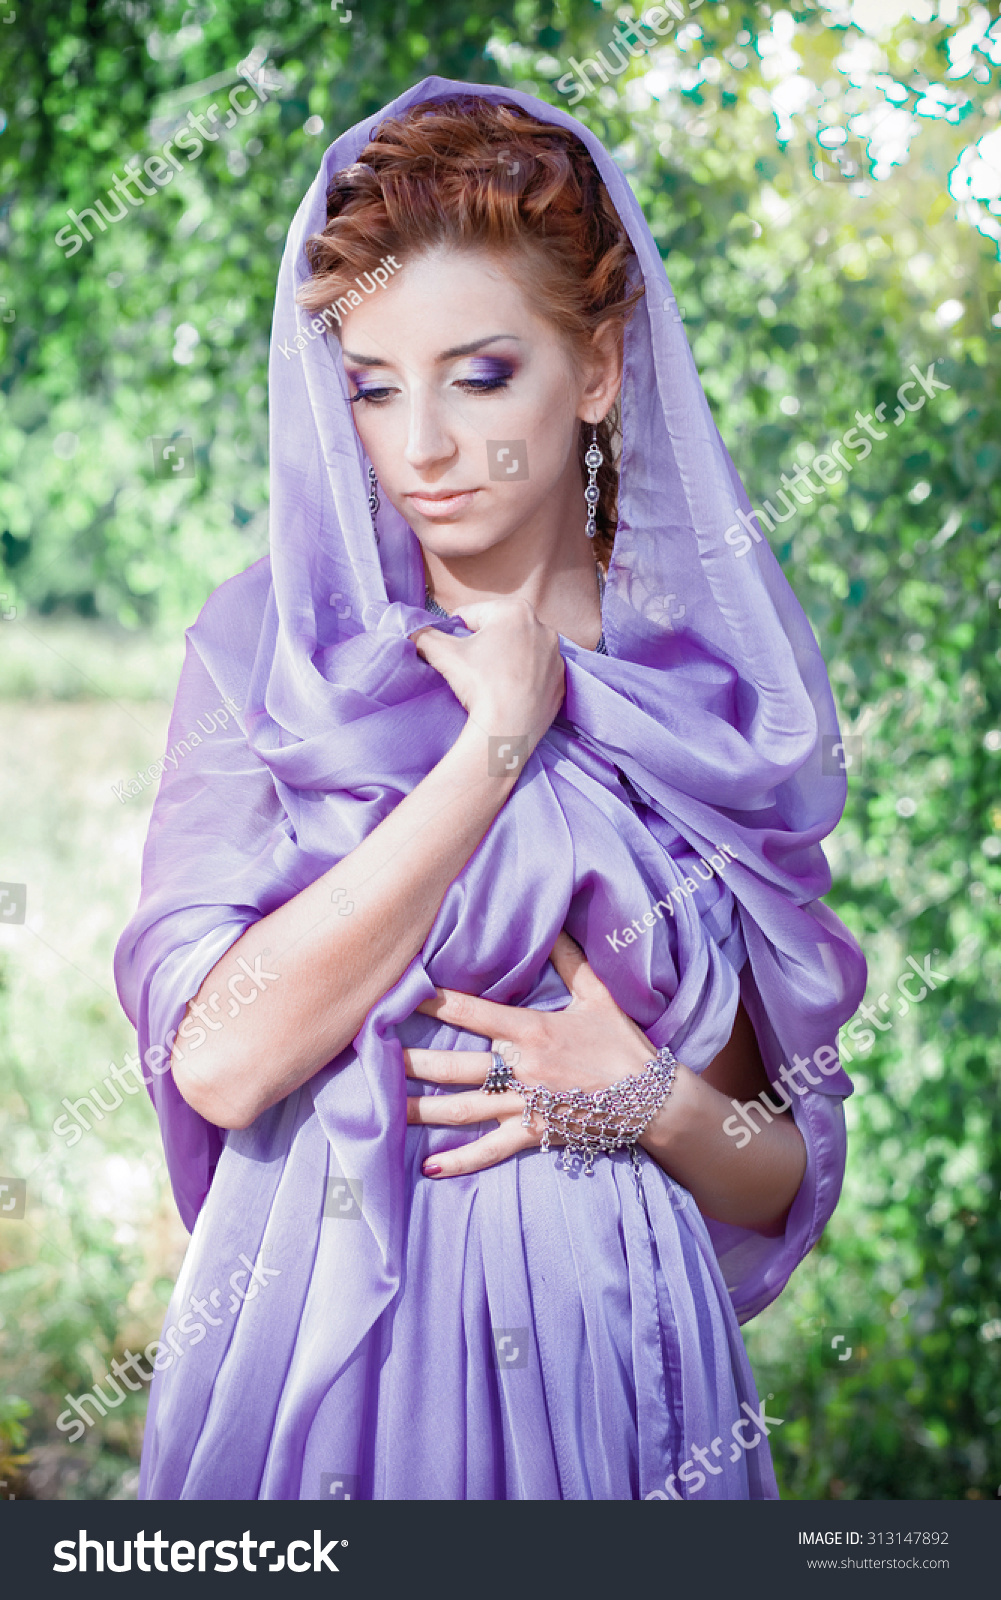 Beautiful Woman Purple Dress Beautiful Long Stock Photo Now) 313147892